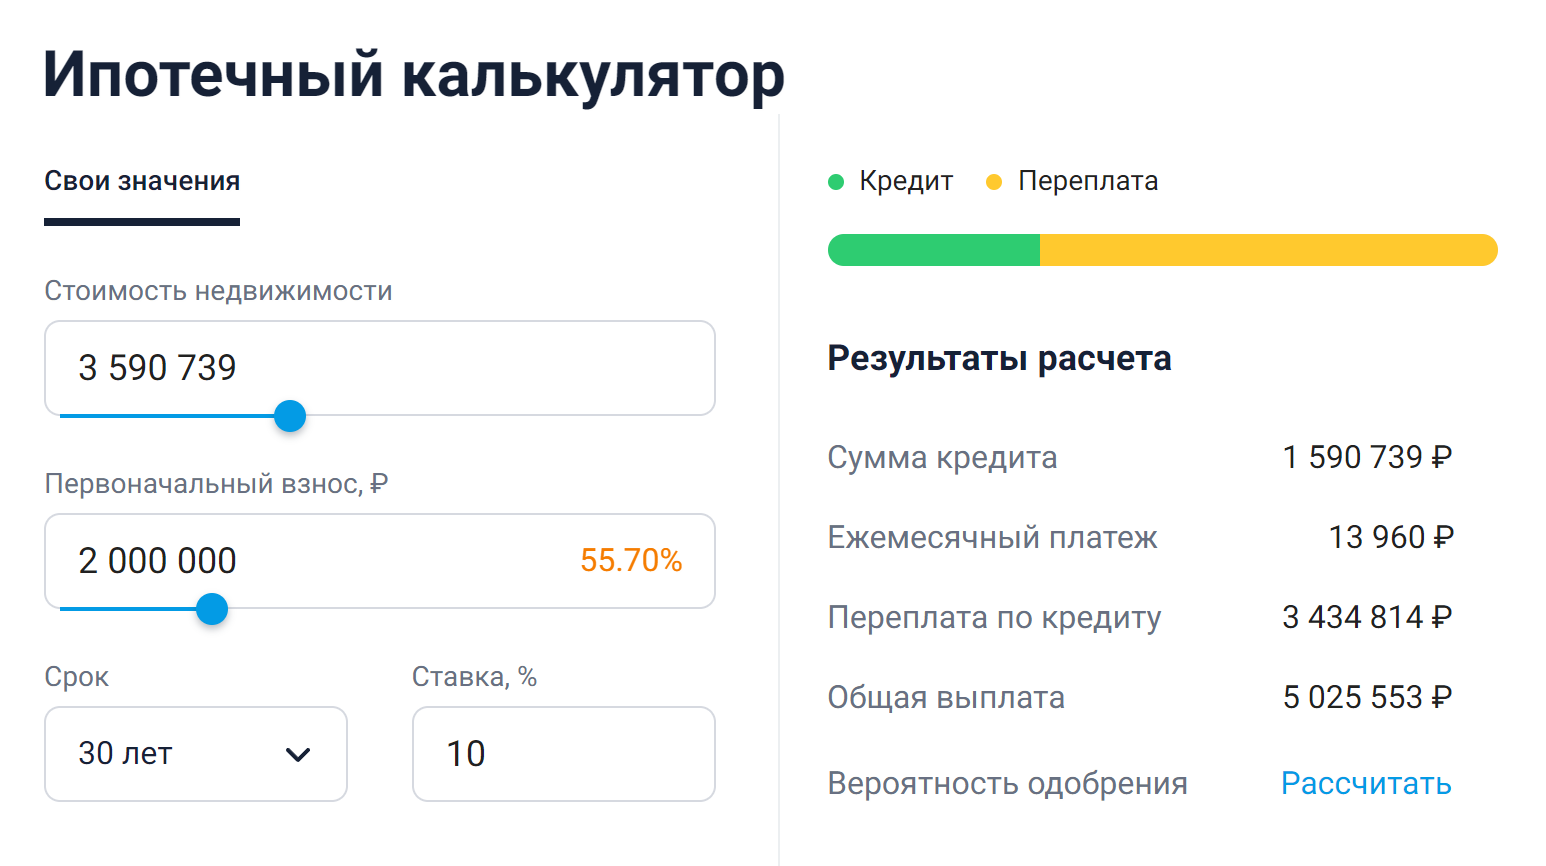 Расчет переплаты и ежемесячного платежа я делала в ипотечном калькуляторе. Источник: banki.ru